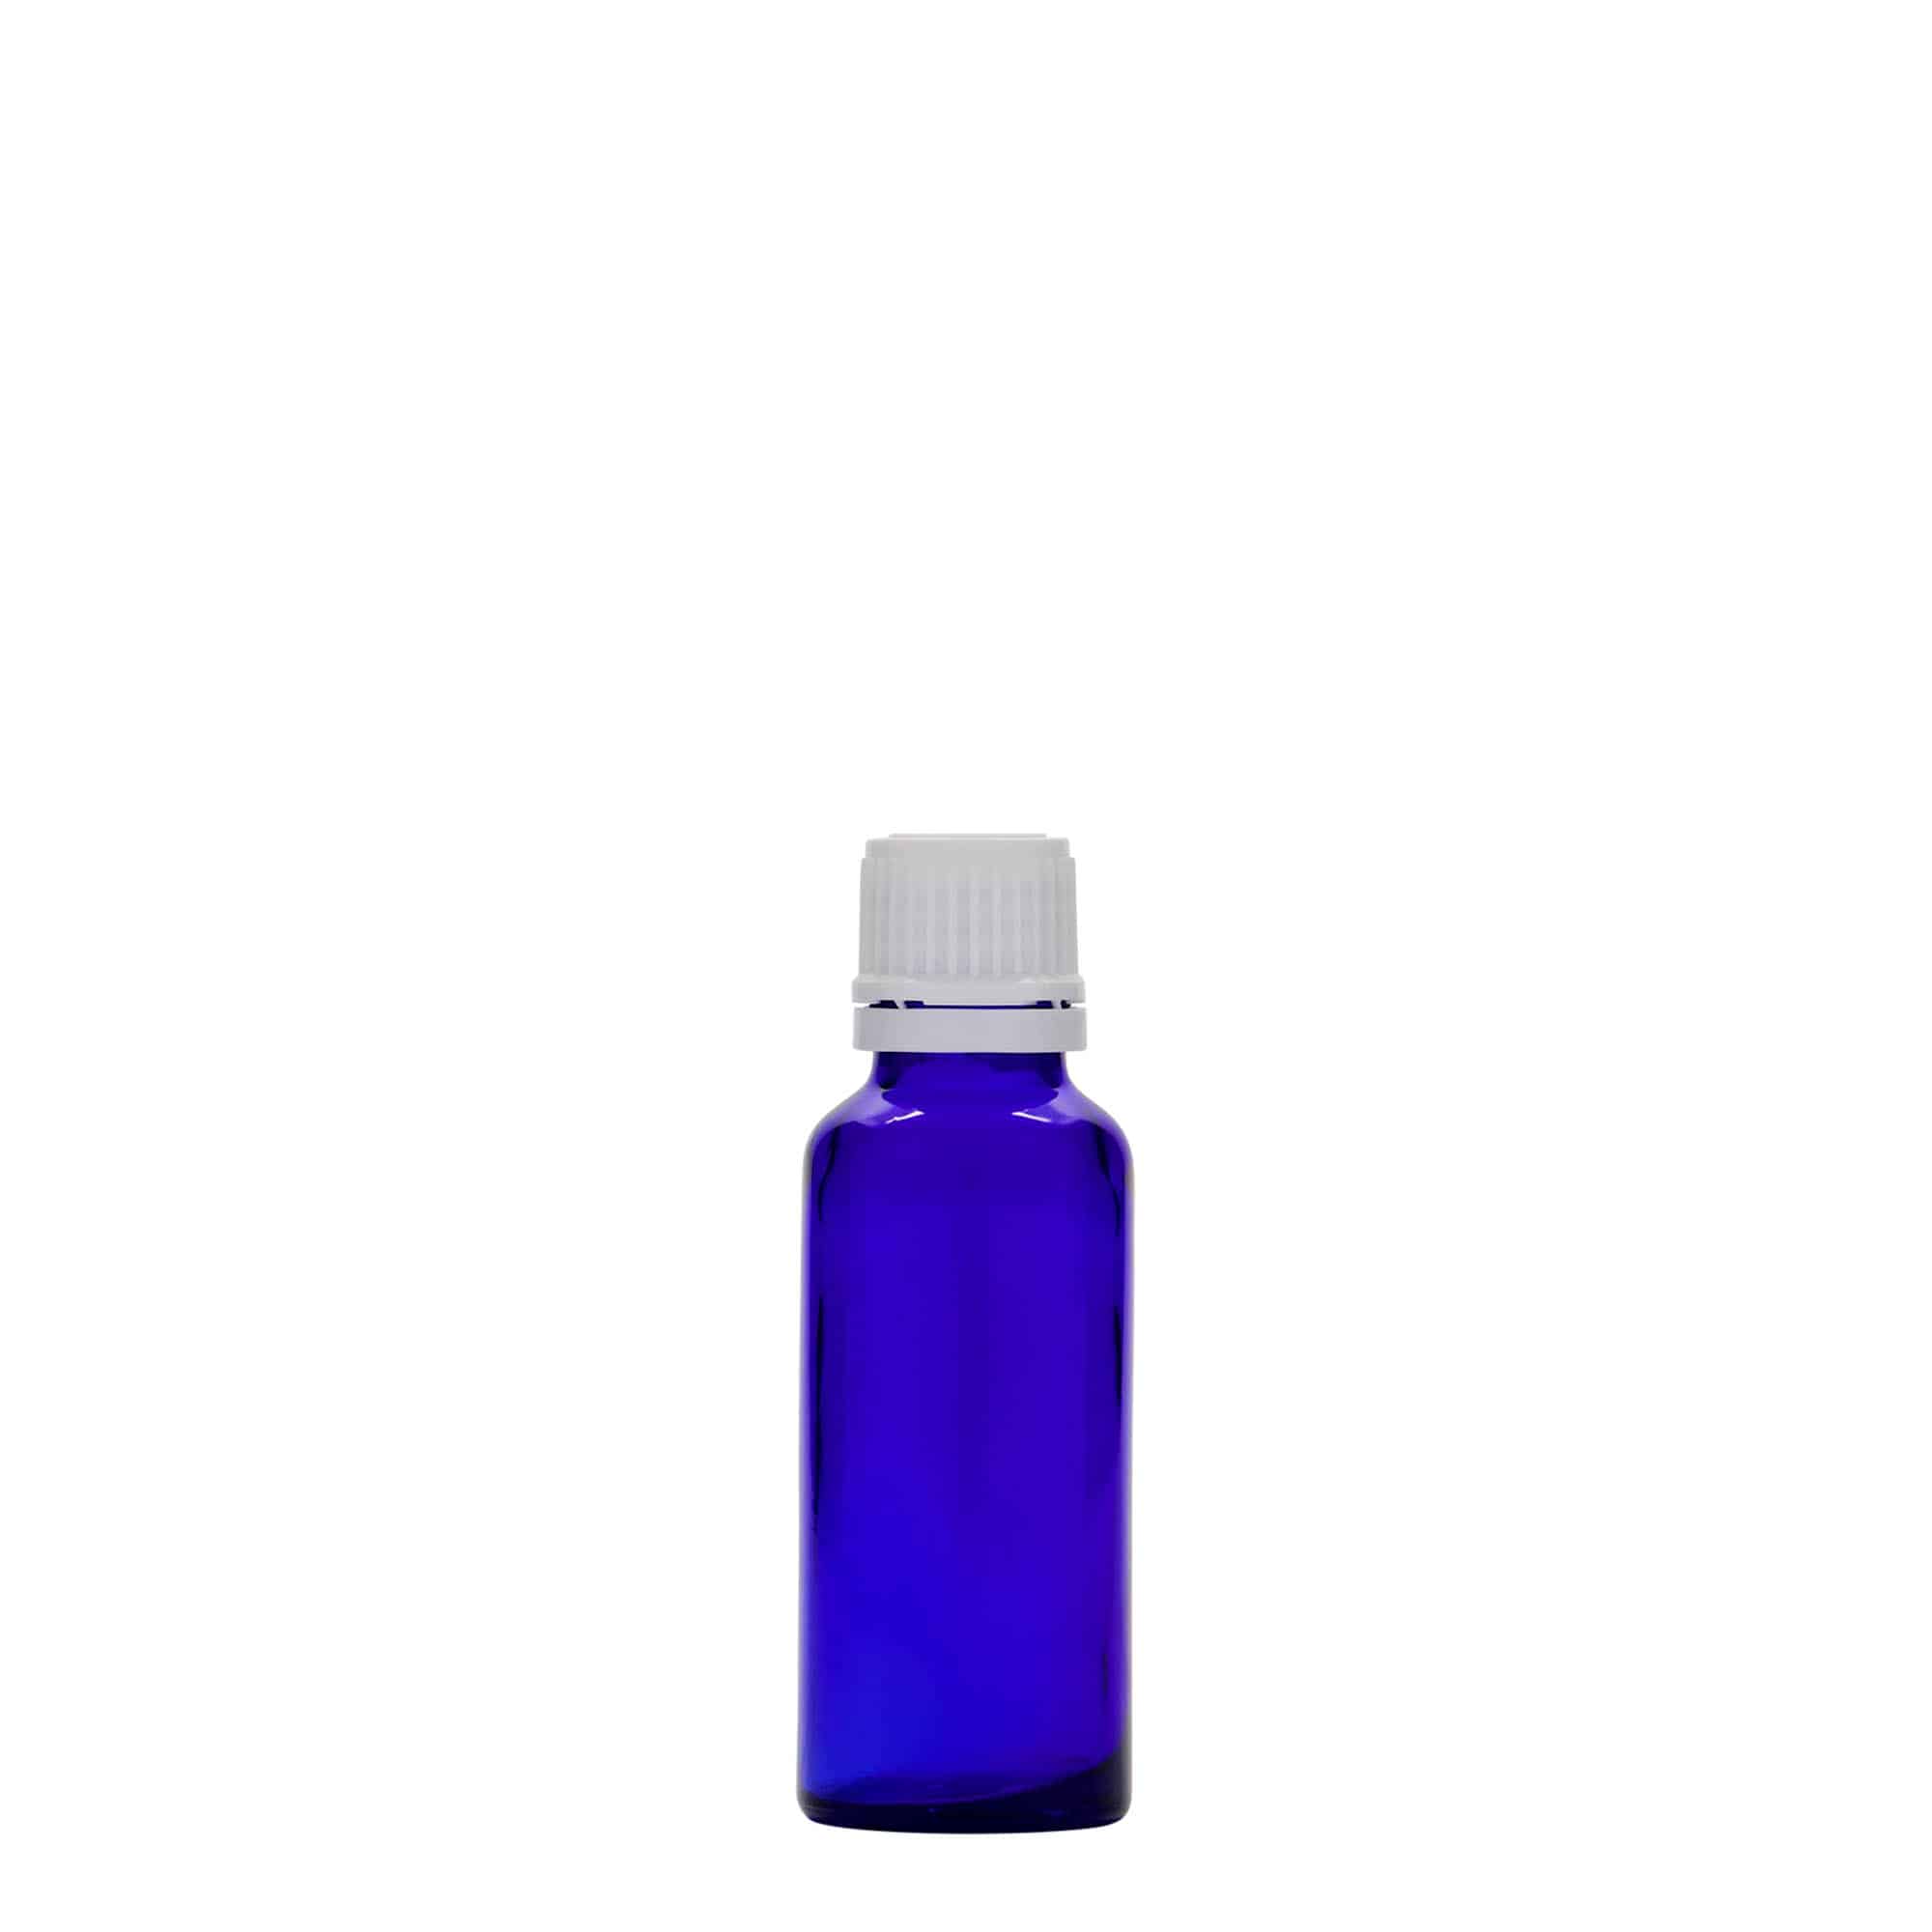 30 ml butelka farmaceutyczna, szkło, kolor błękit królewski, zamknięcie: DIN 18